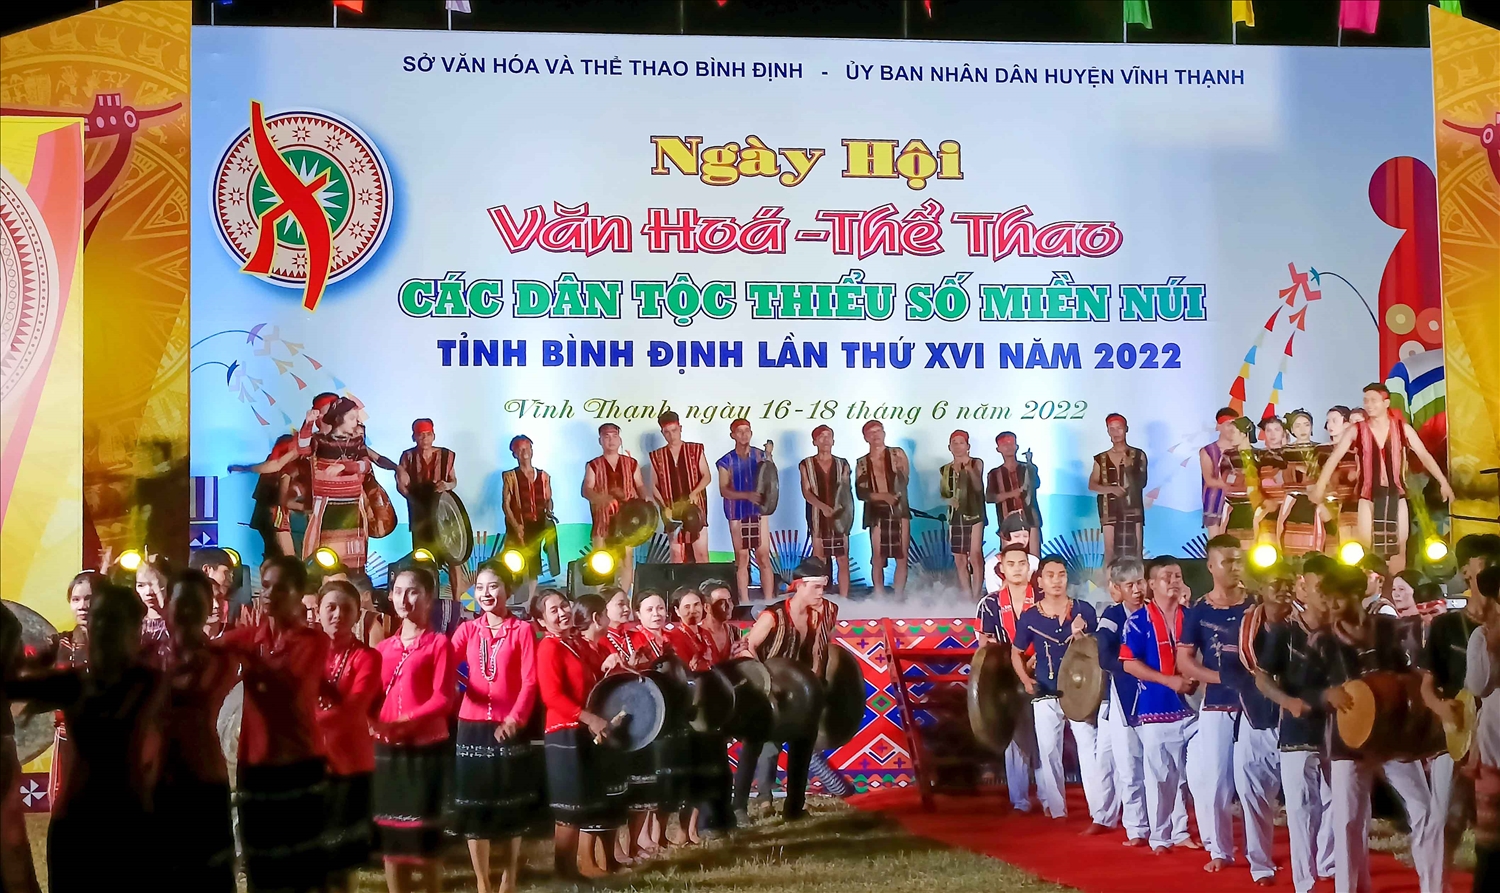 Tiết mục khai mạc Ngày hội Văn VH-TT các DTTS miền núi tỉnh Bình Định lần thứ XVI - năm 2022